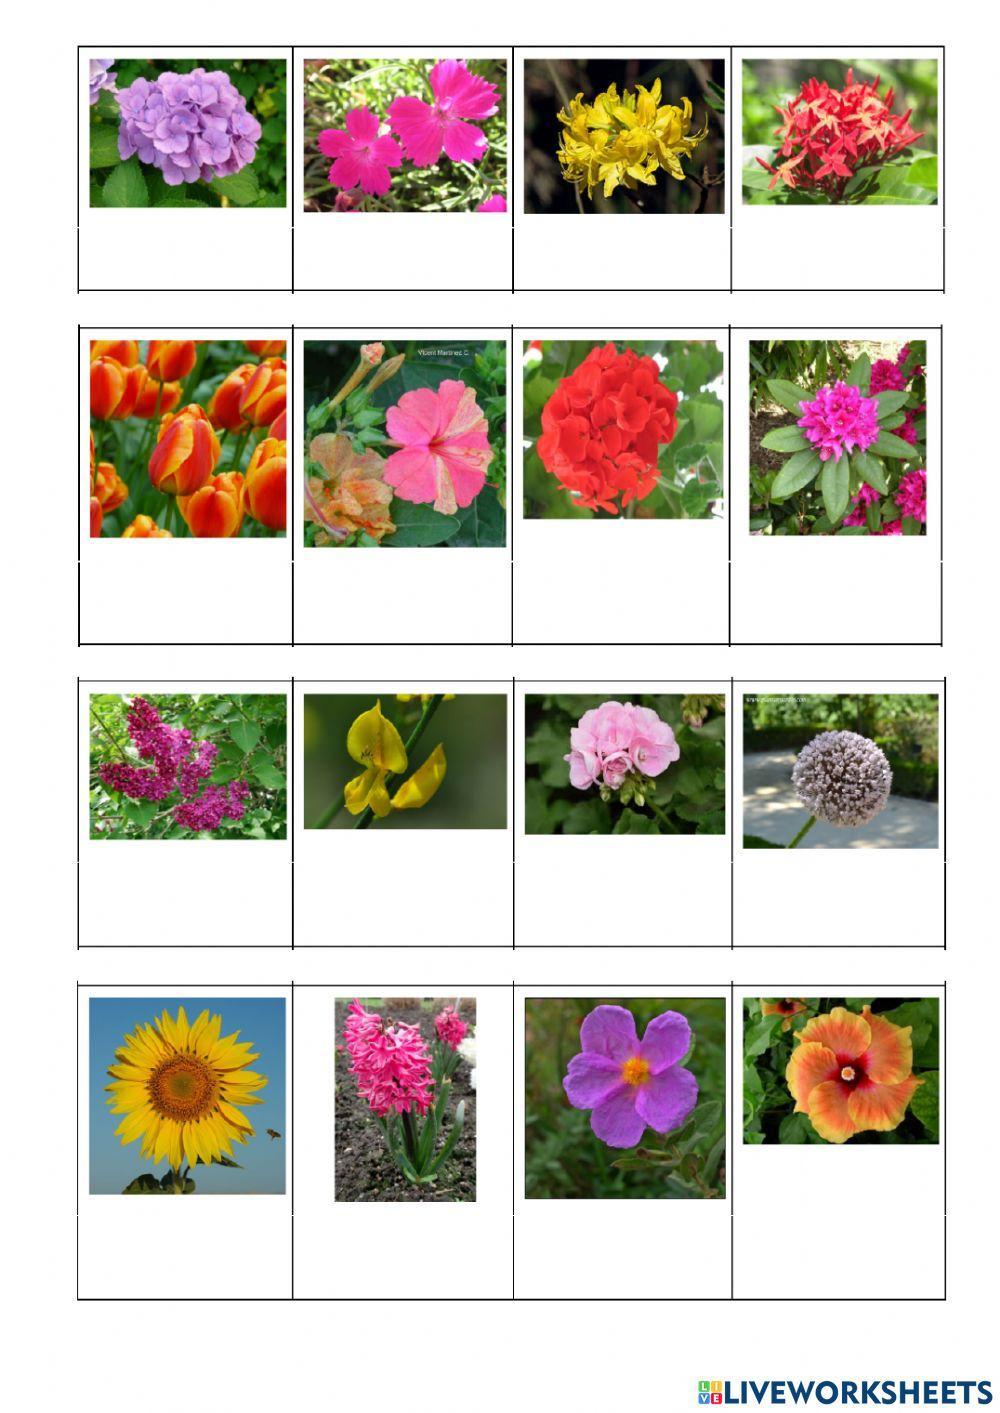 Les plantes - classificació de flors